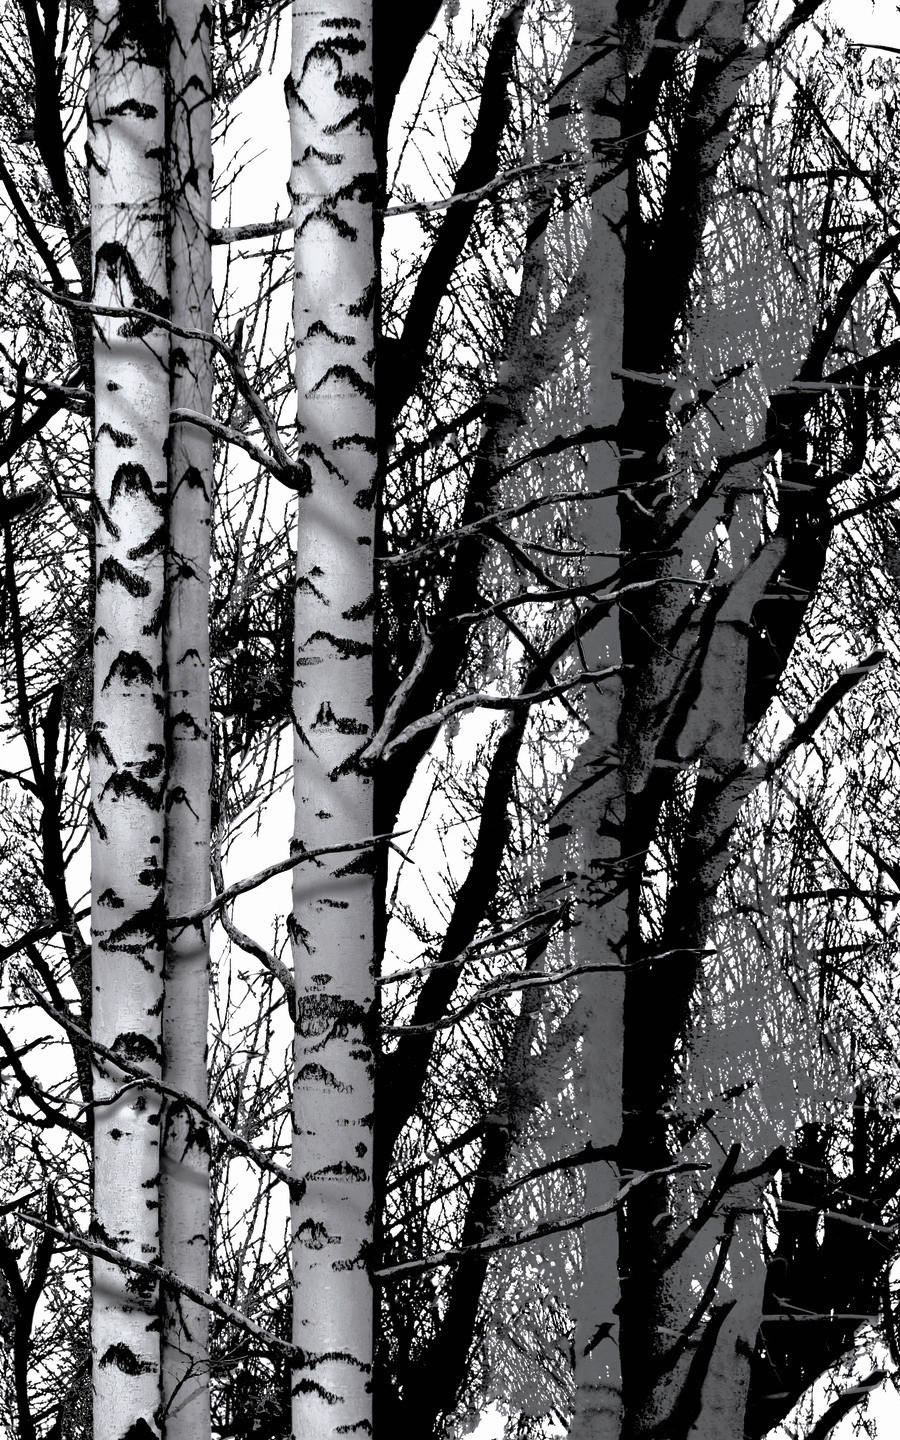 d-c-fix Dekofolie Wood schwarz weiß B/L: ca. 45x150 cm Klebefolie_Wood - weiß/schwarz (45,00/150,00cm)